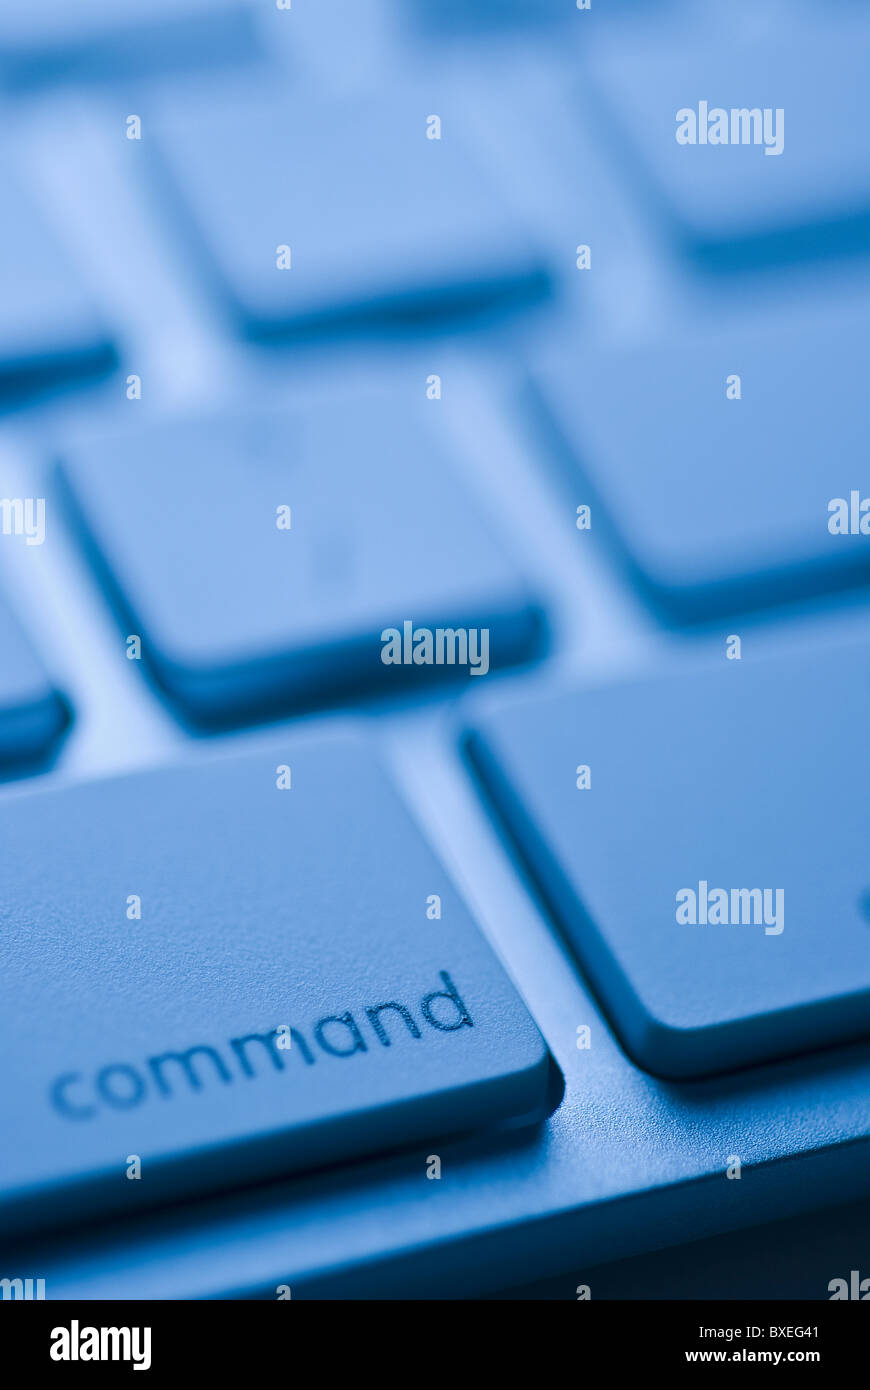 Command-Taste auf der Tastatur Stockfotografie - Alamy